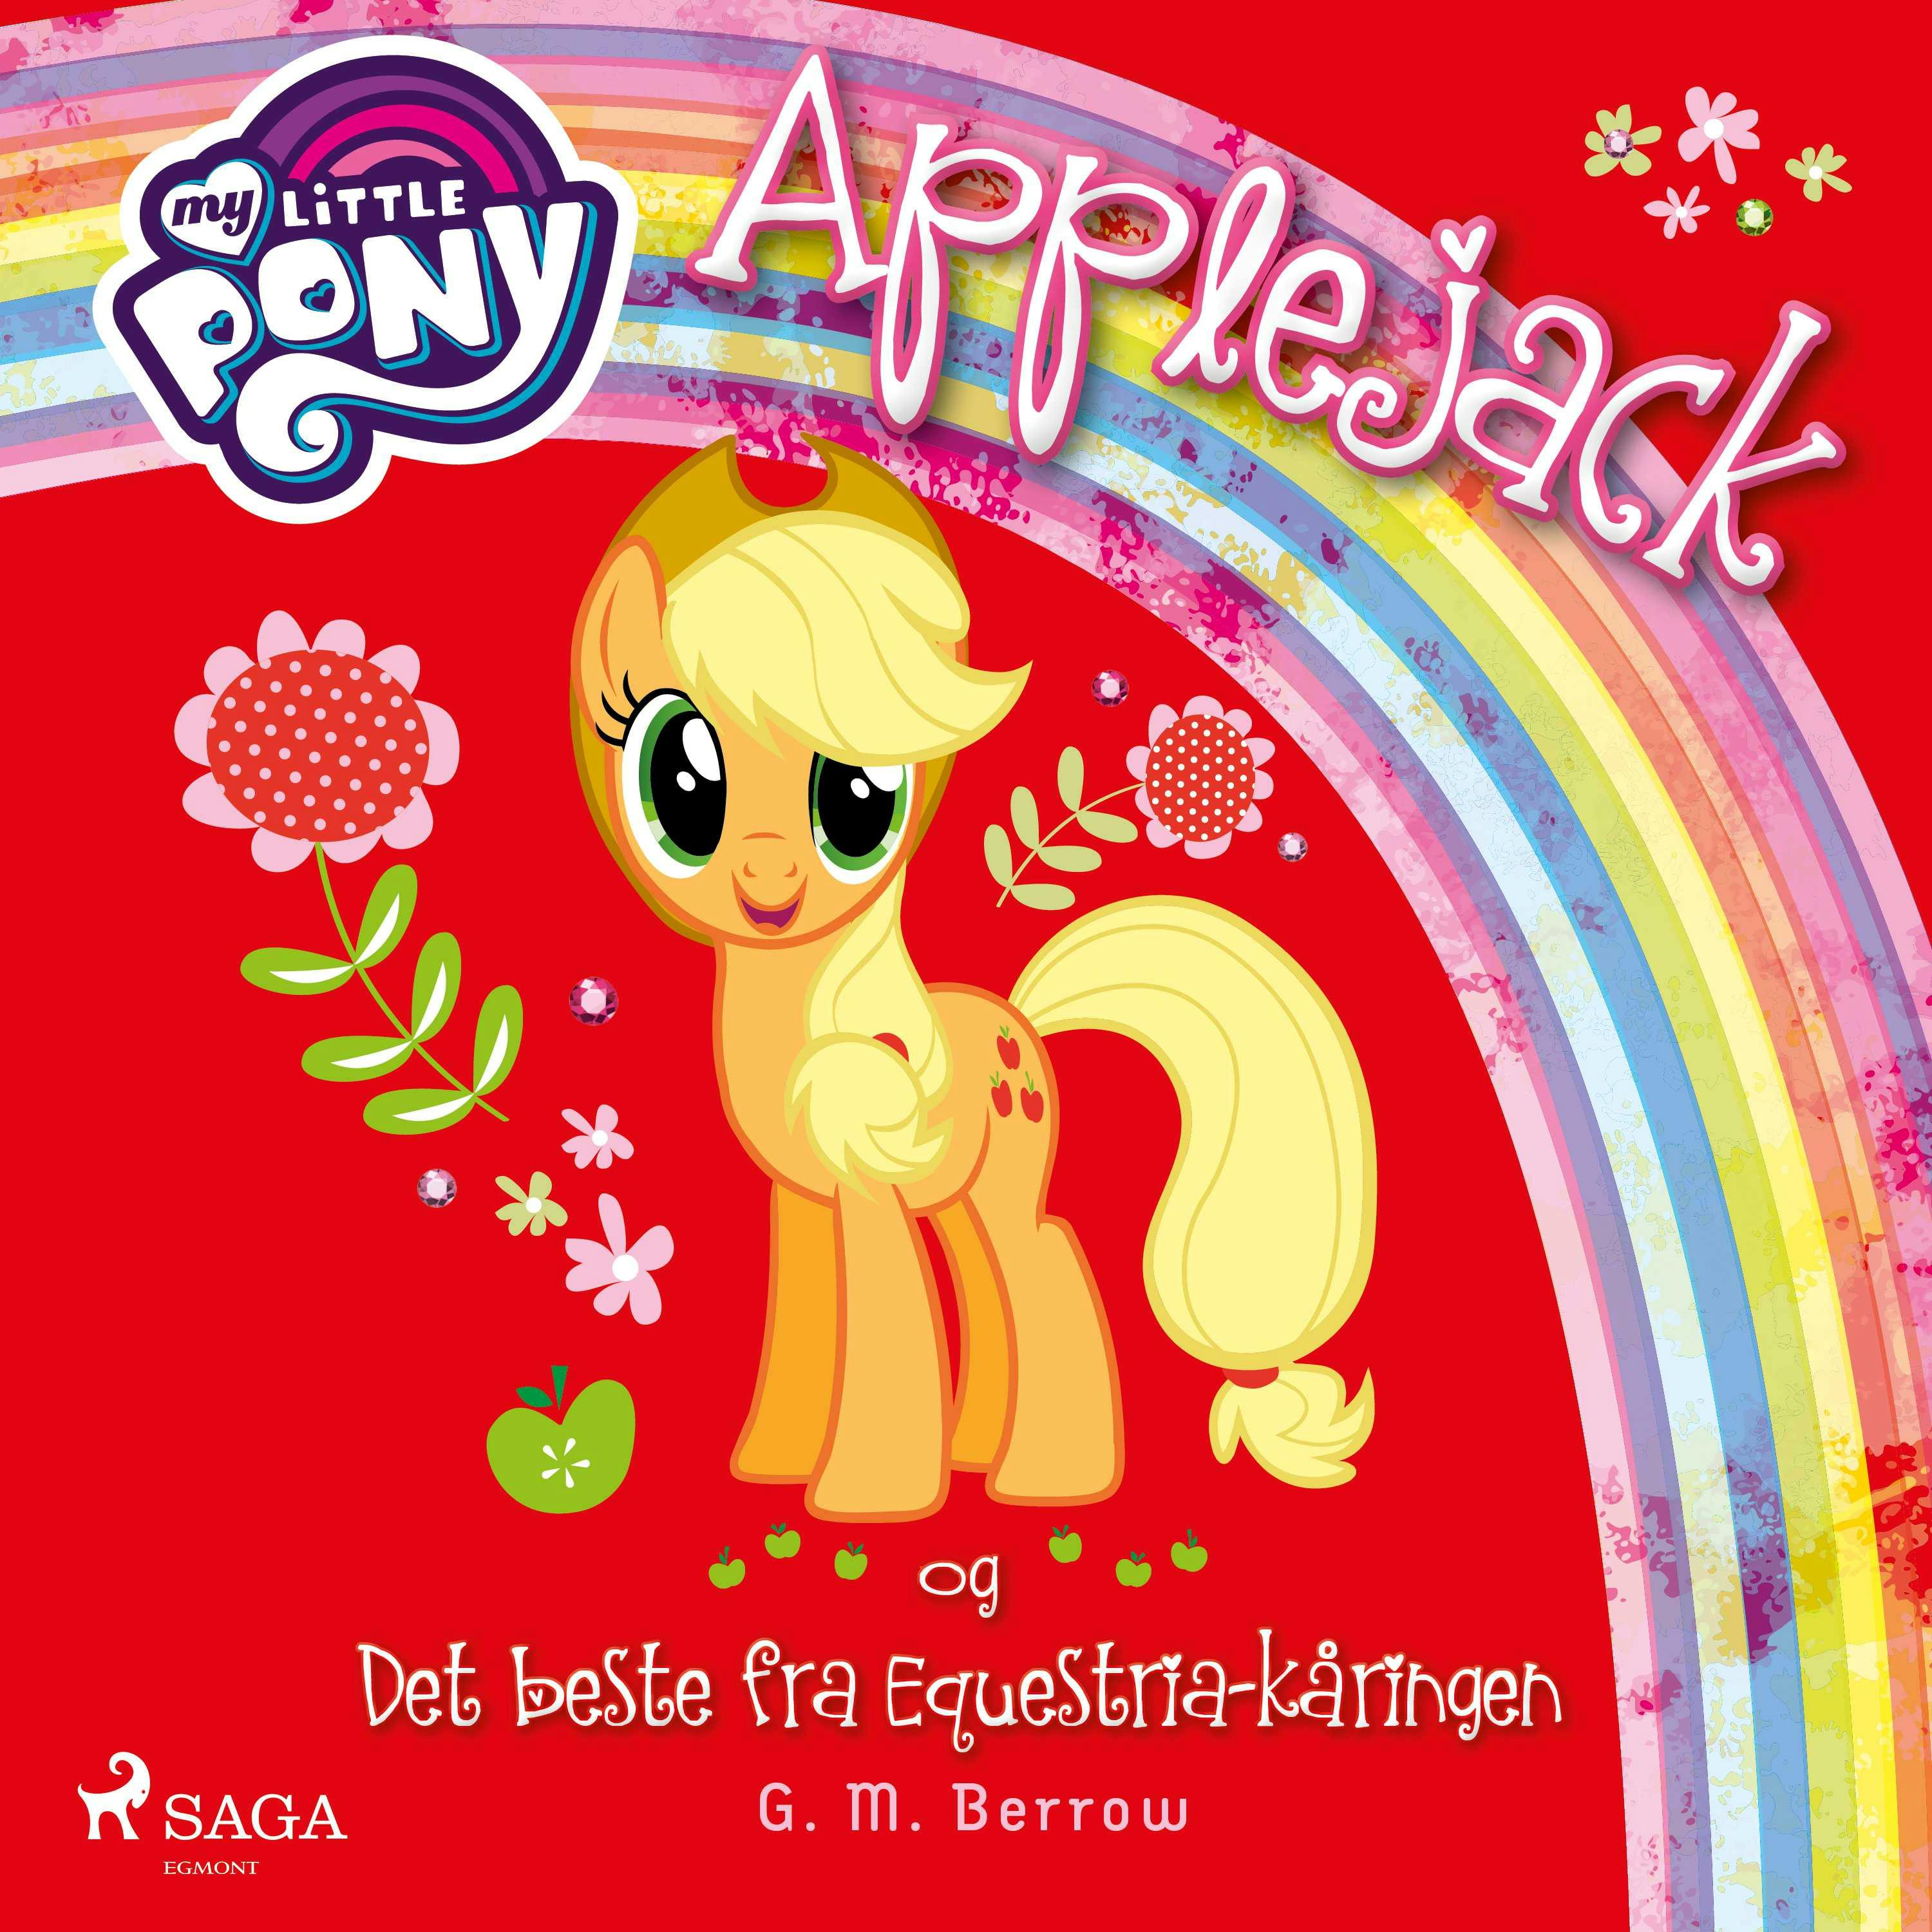 My Little Pony - Applejack og Det beste fra Equestria-kåringen - undefined